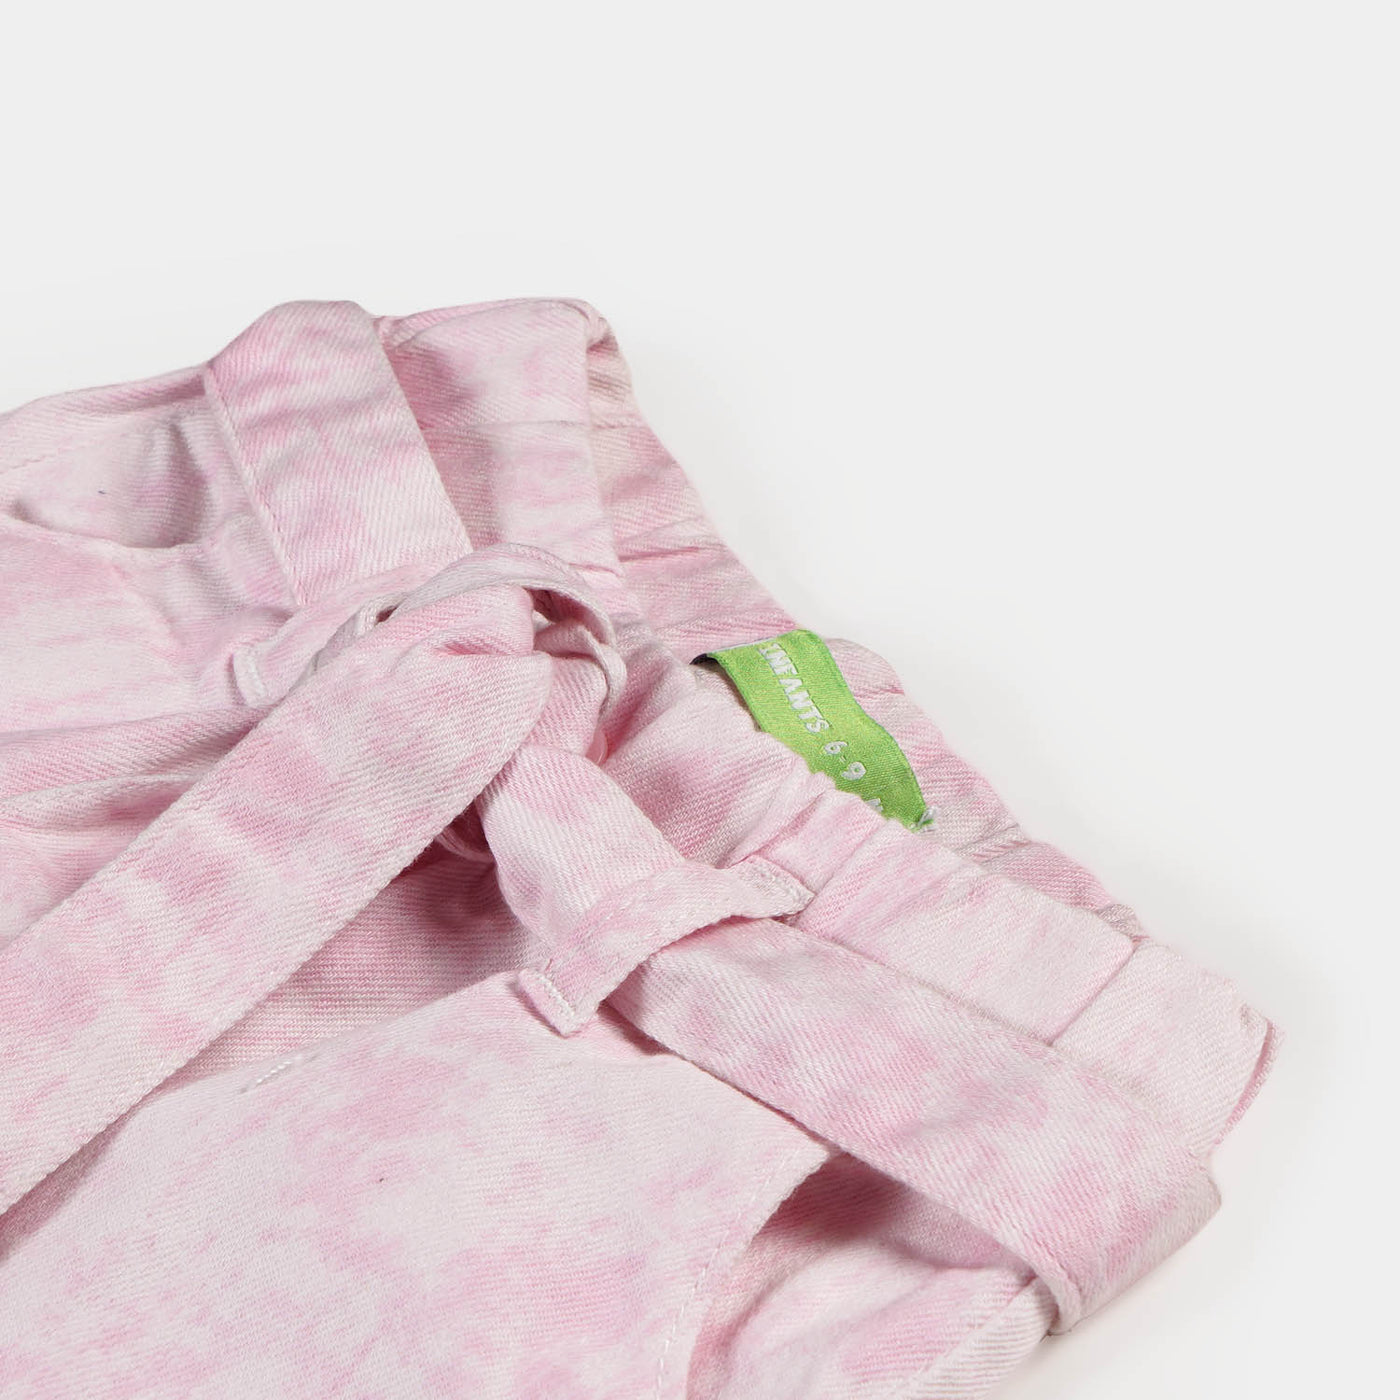 Infant Girls Cotton Pant Pink Dye - Tie & Dye